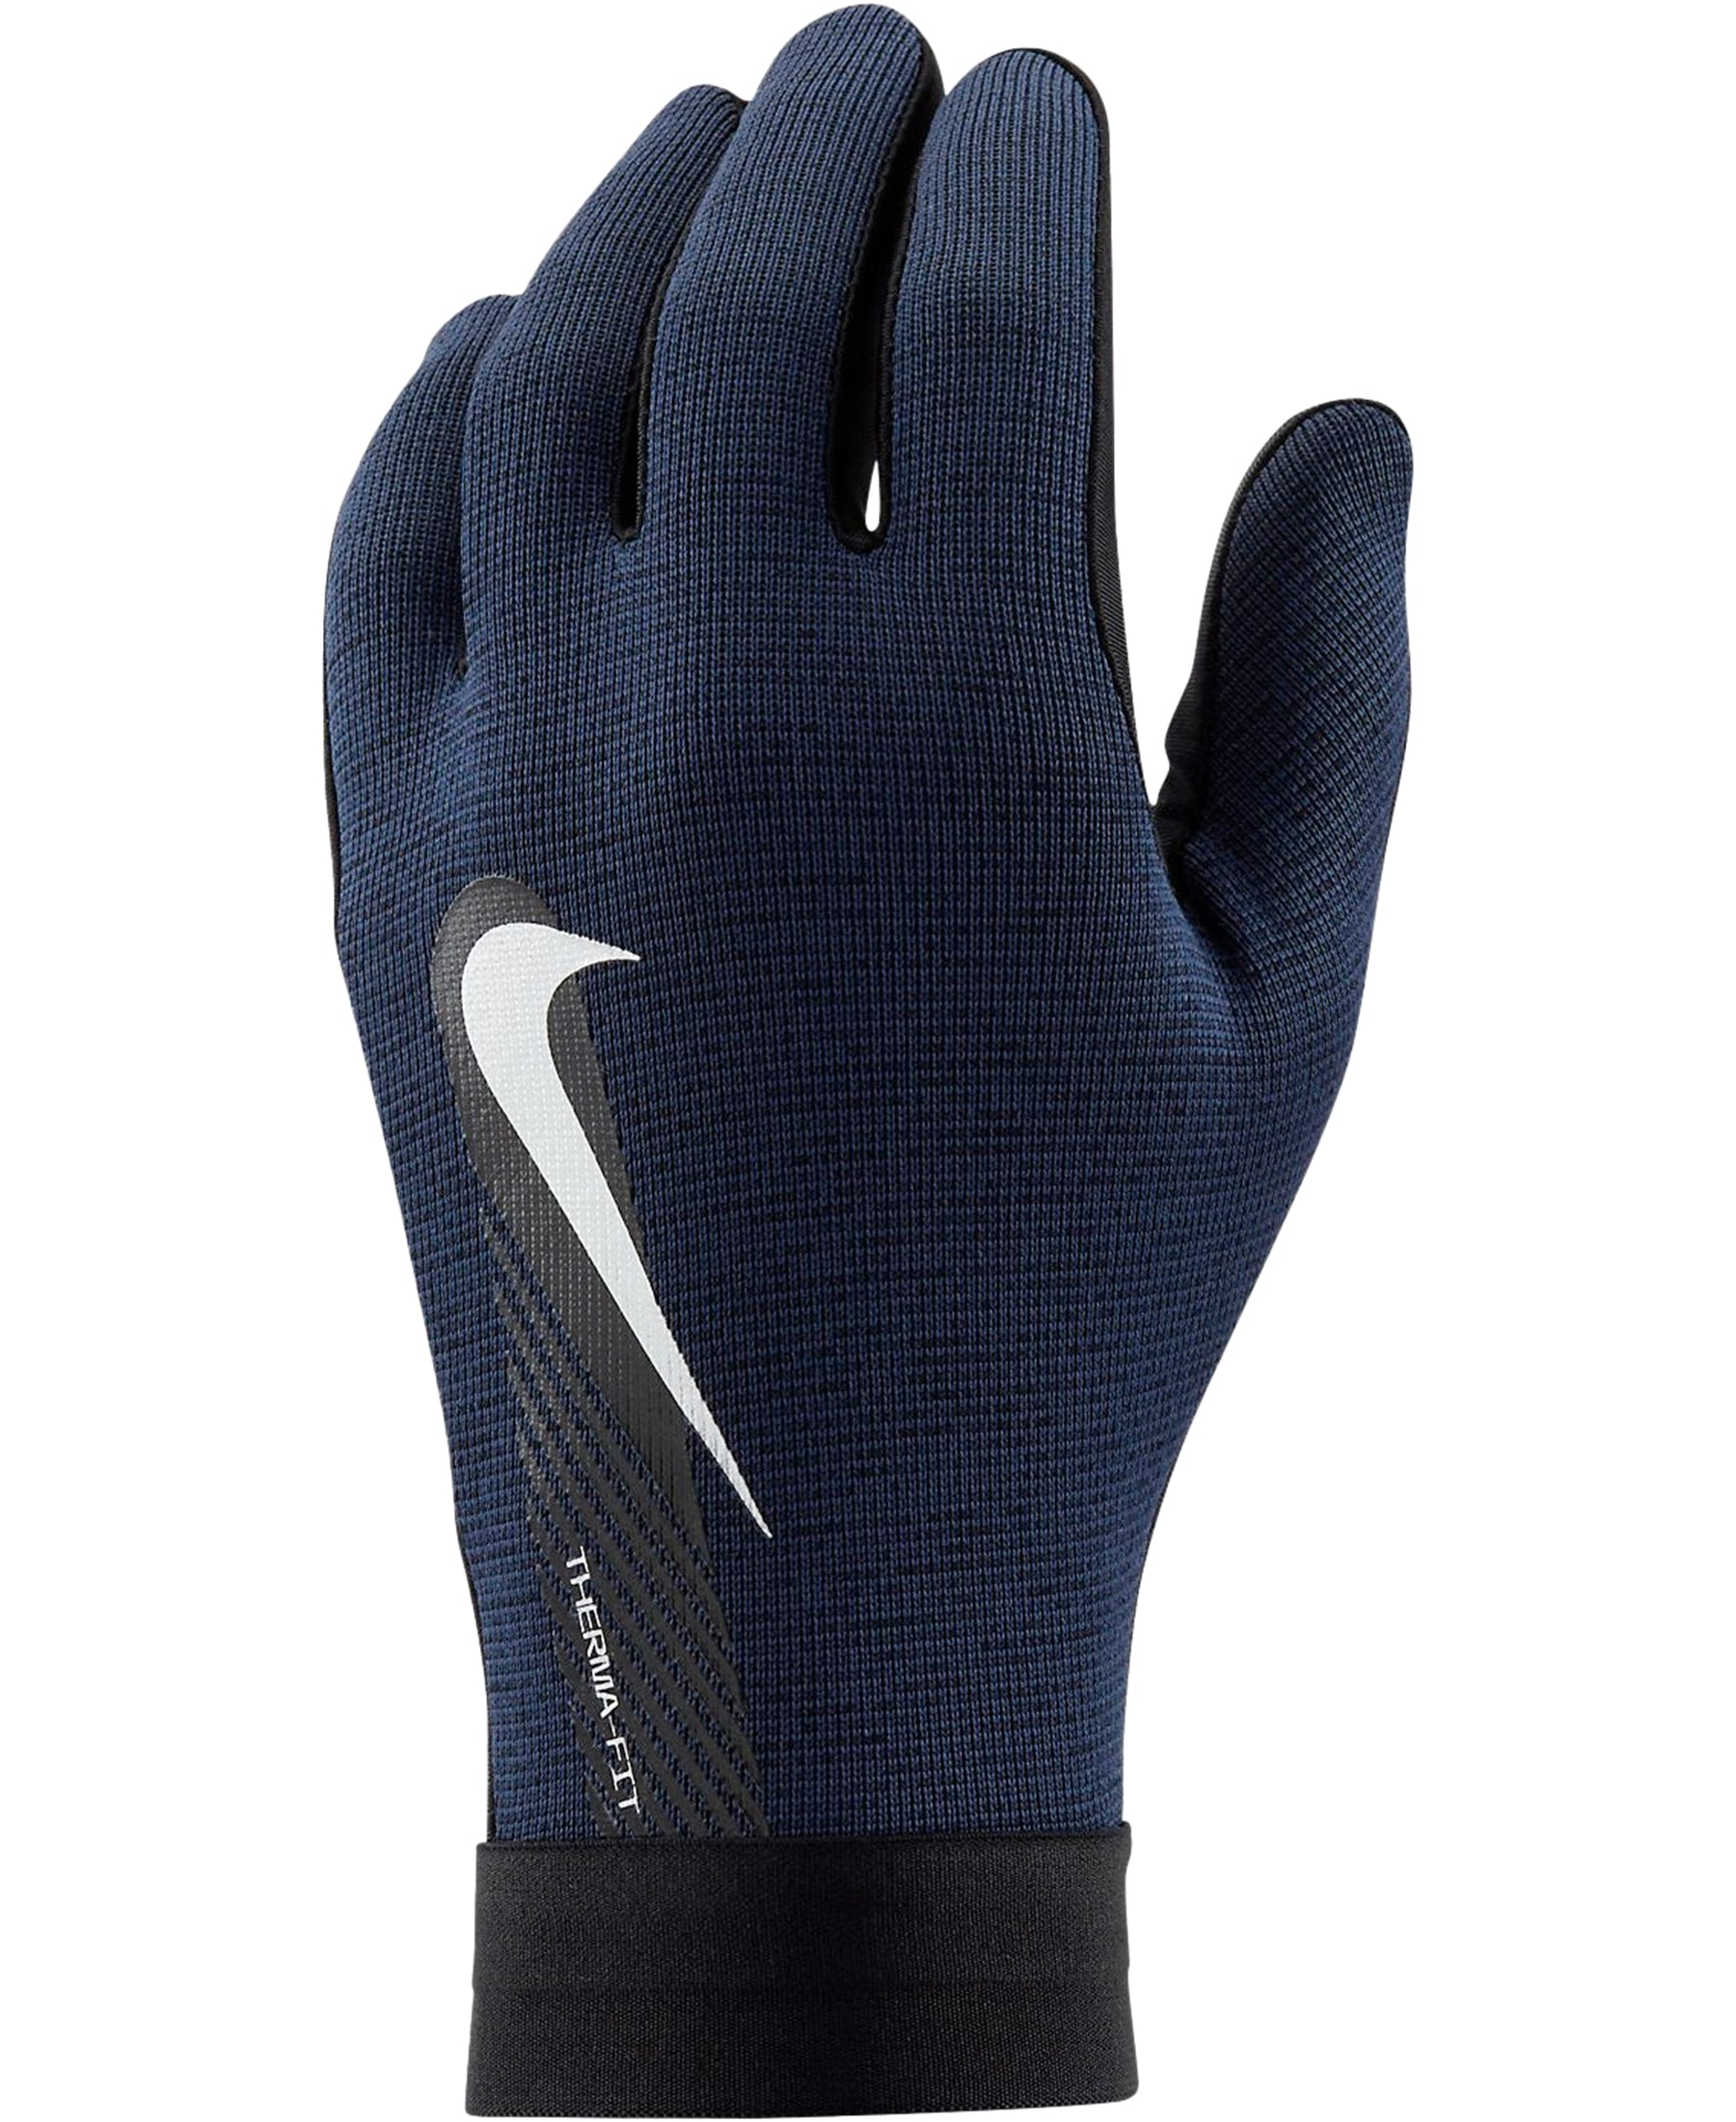 Die Nike Academy Hyperwarm Therma-FIT Spielerhandschuhe (Artikelnummer: DQ6071-011) bieten erstklassige Wärme und Komfort für kältere Trainingseinheiten. Mit ihrem innovativen Design und hochwertigen Materialien halten sie die Hände angenehm warm und trocken. Die Therma-FIT-Technologie reguliert die Körpertemperatur, während die griffigen Handflächen einen sicheren Halt ermöglichen. Diese Handschuhe sind ideal für Fußballspieler, die bei jeder Witterung trainieren möchten.